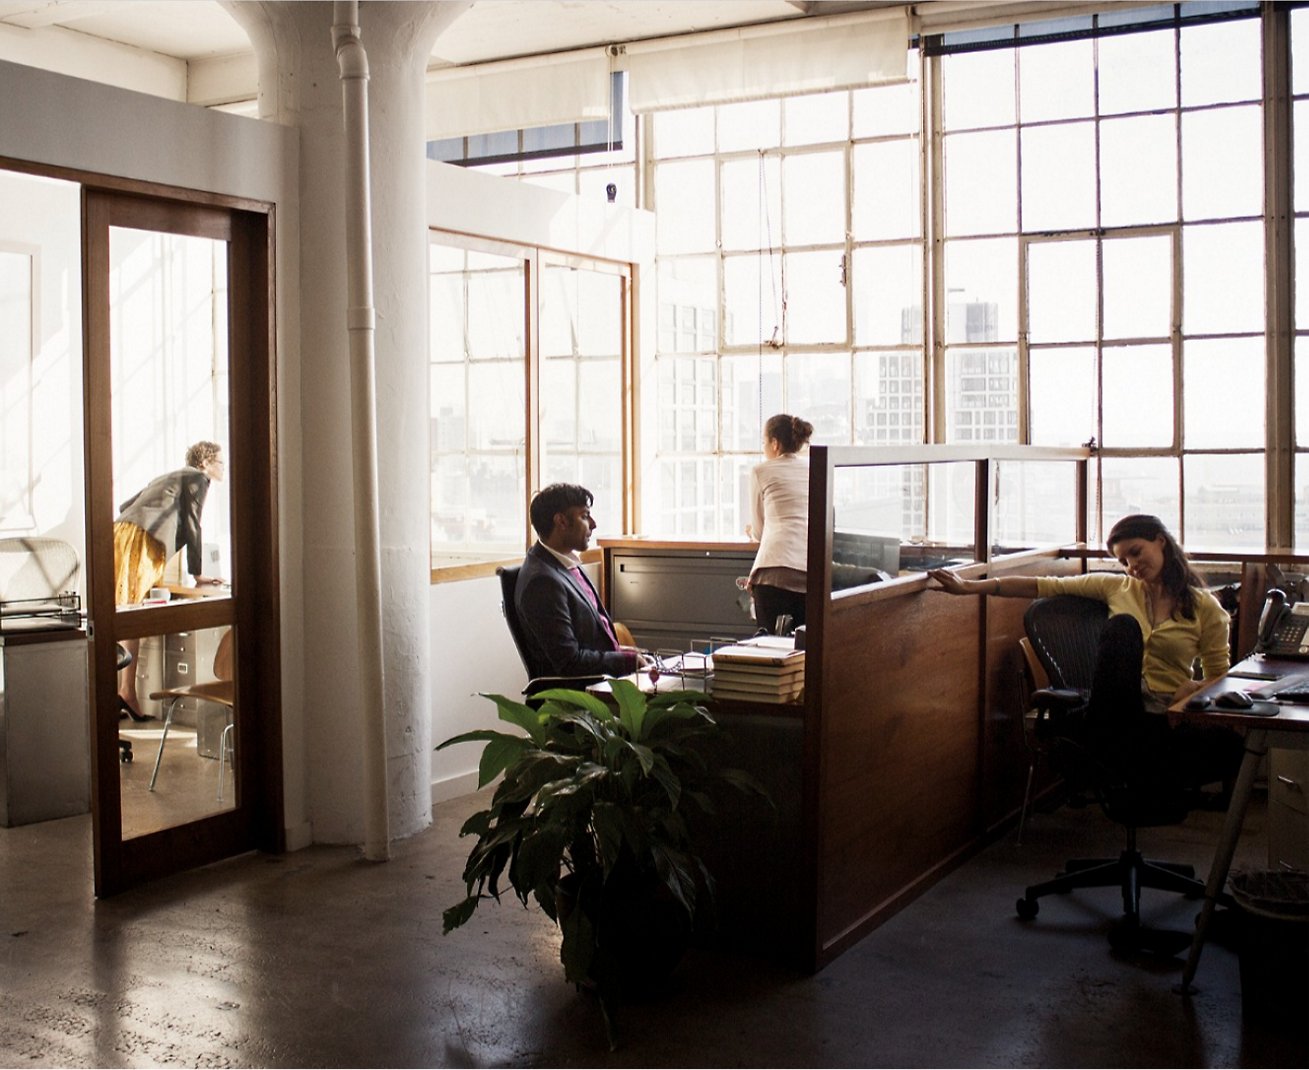 Μια ομάδα ατόμων που κάθονται σε γραφεία σε ένα γραφείο.